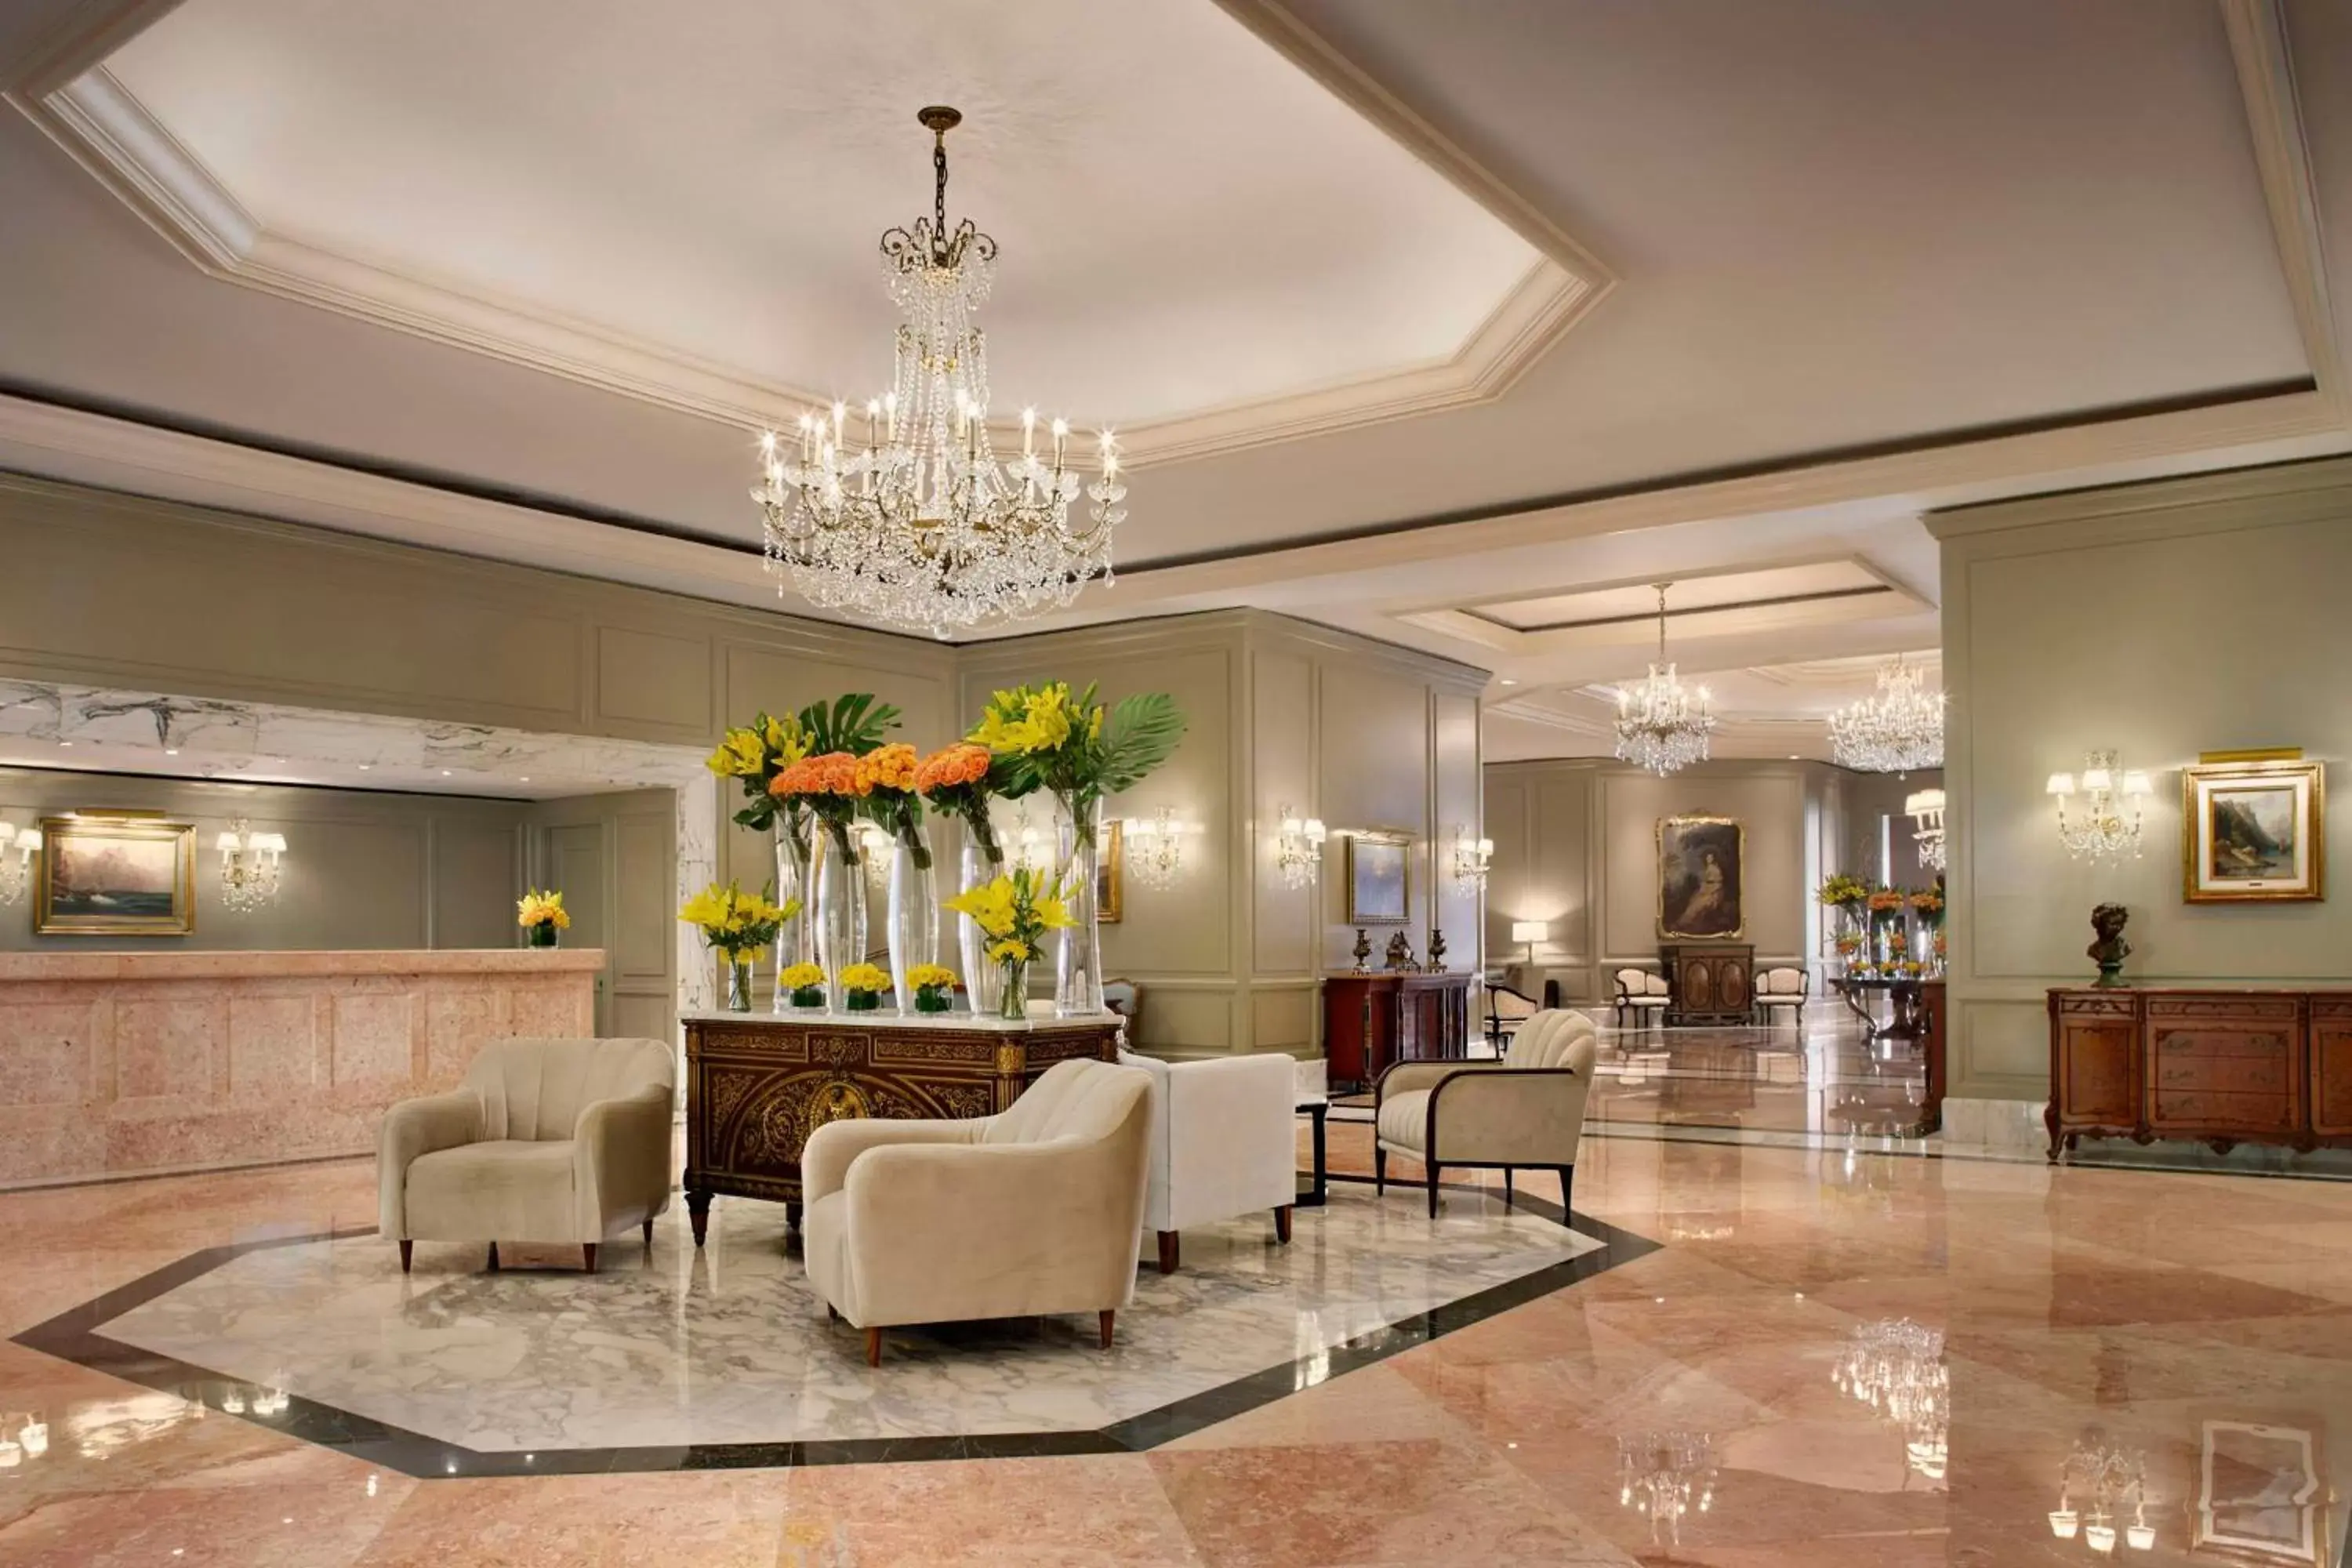 Lobby or reception, Lobby/Reception in Kempinski Hotel Cancun